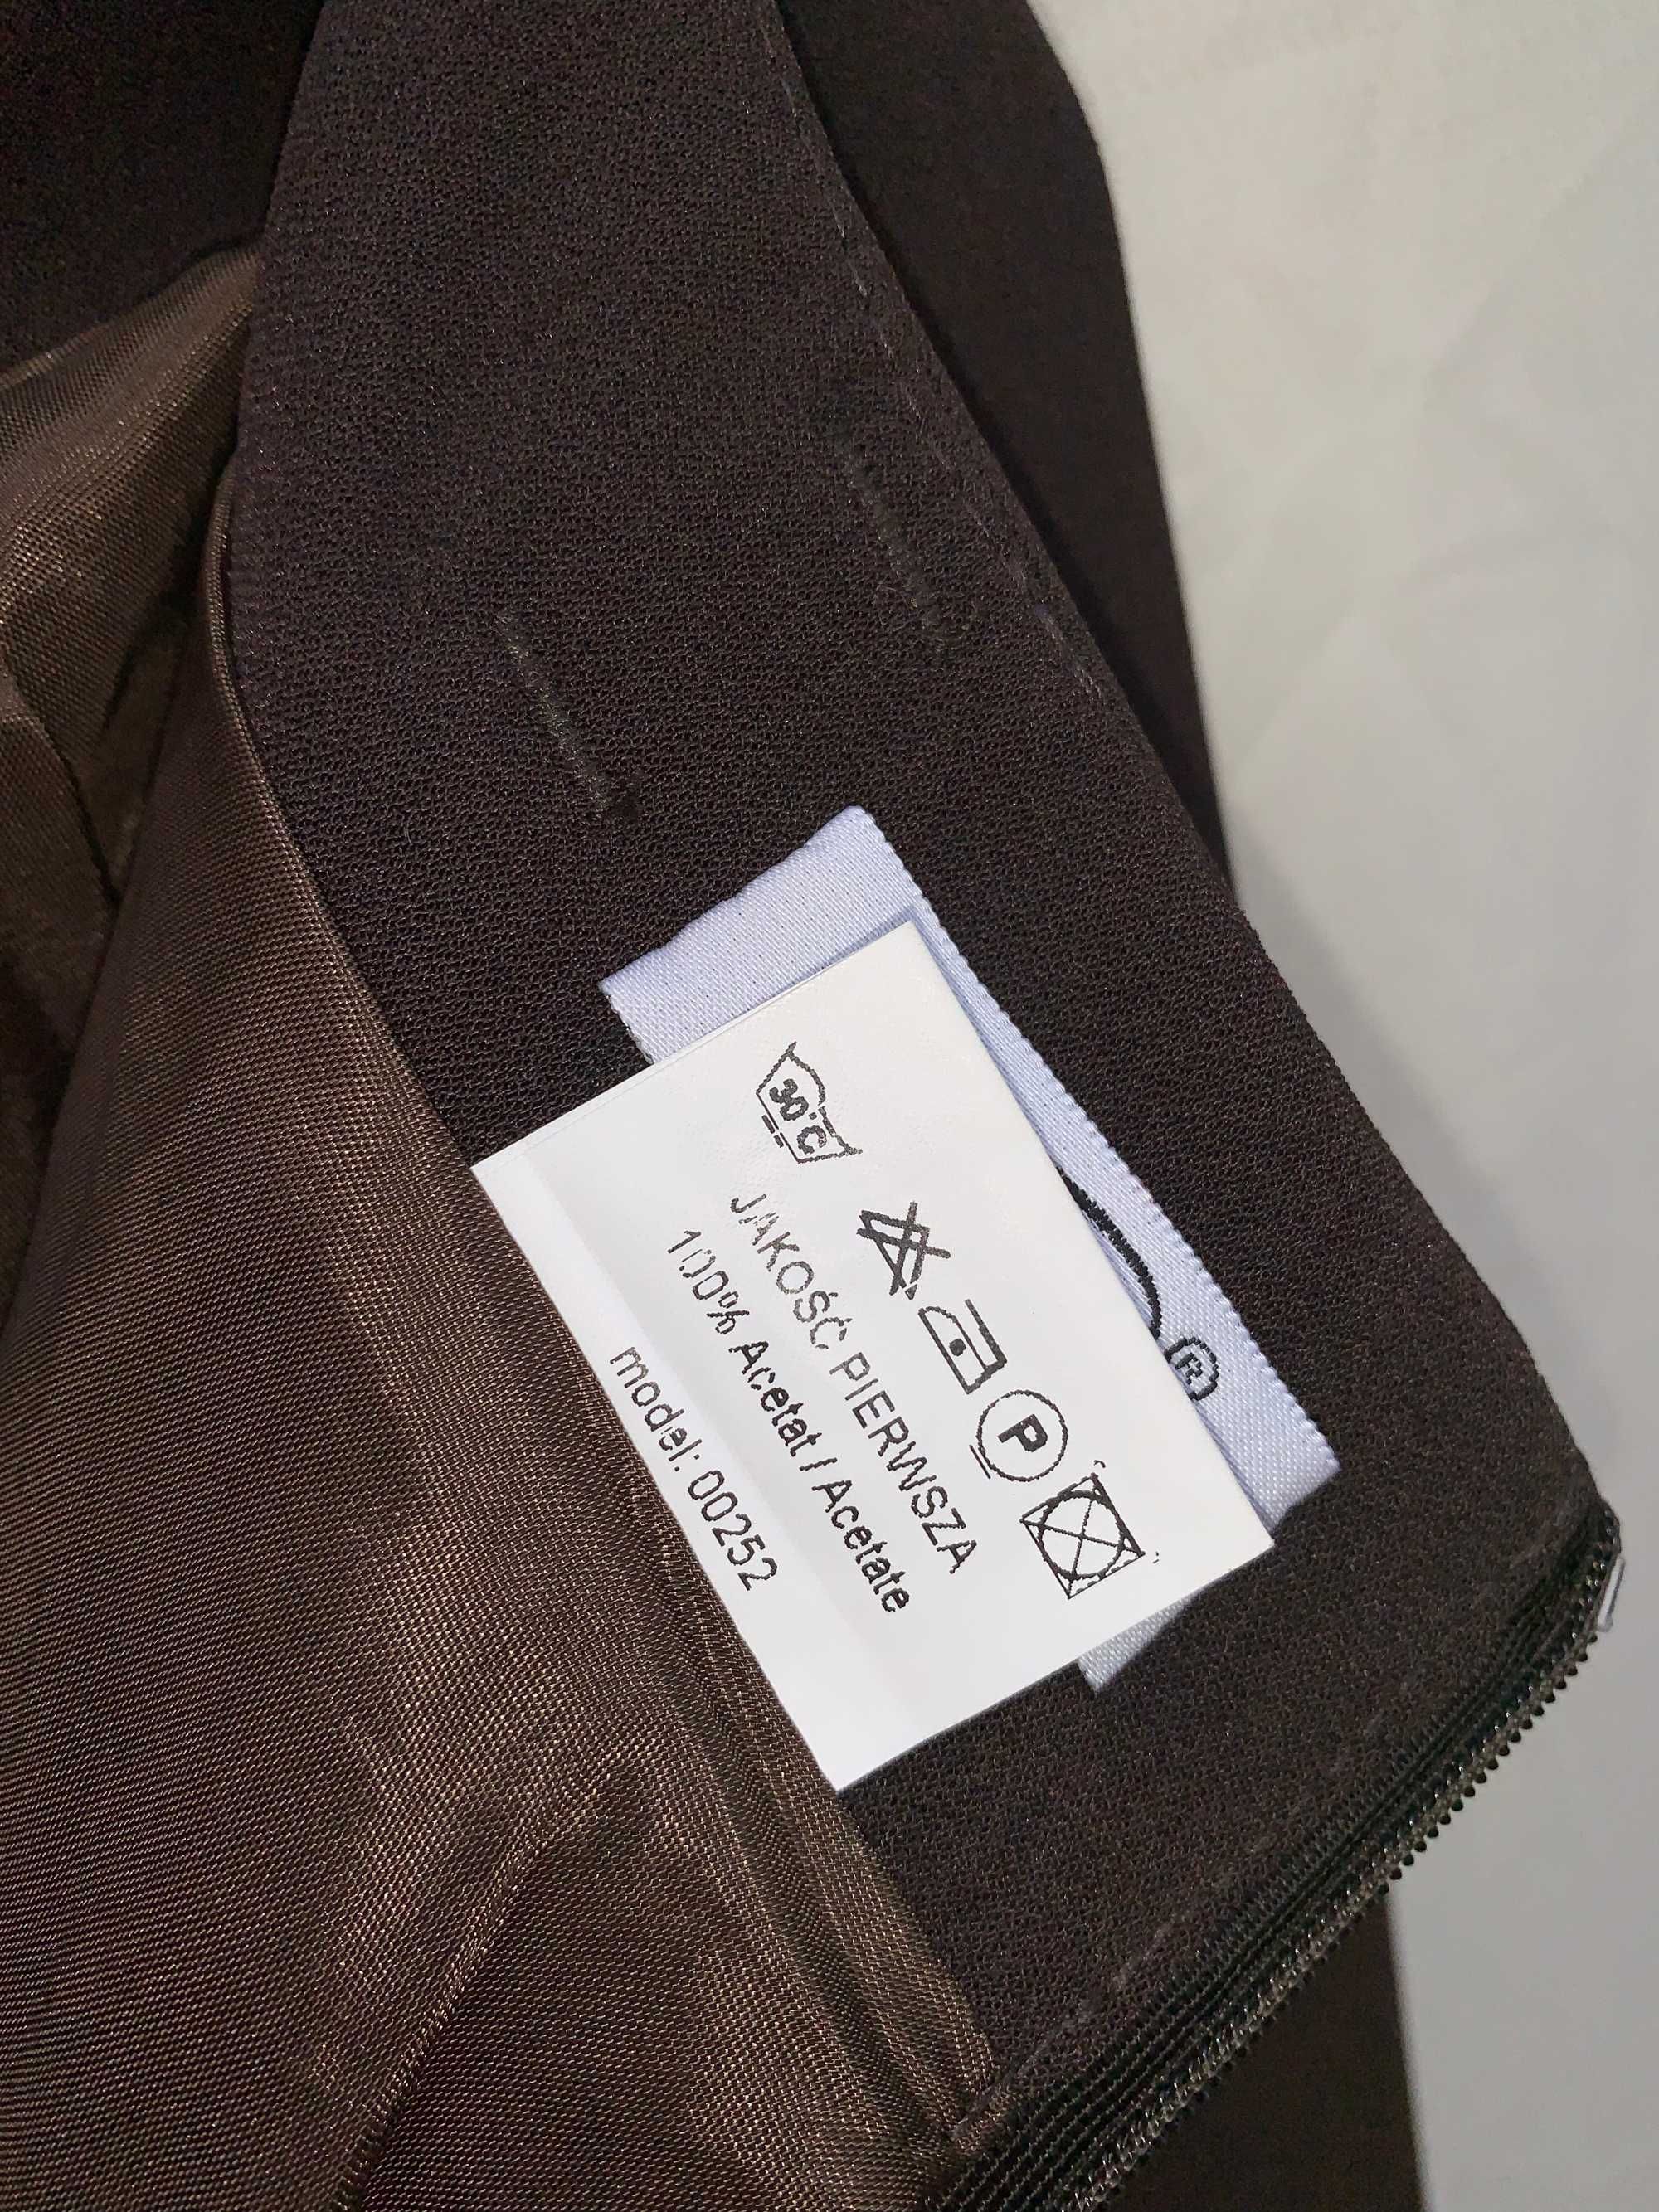 Nowa klasyczna brązowa spódnica , romiar 40, firma Joanna